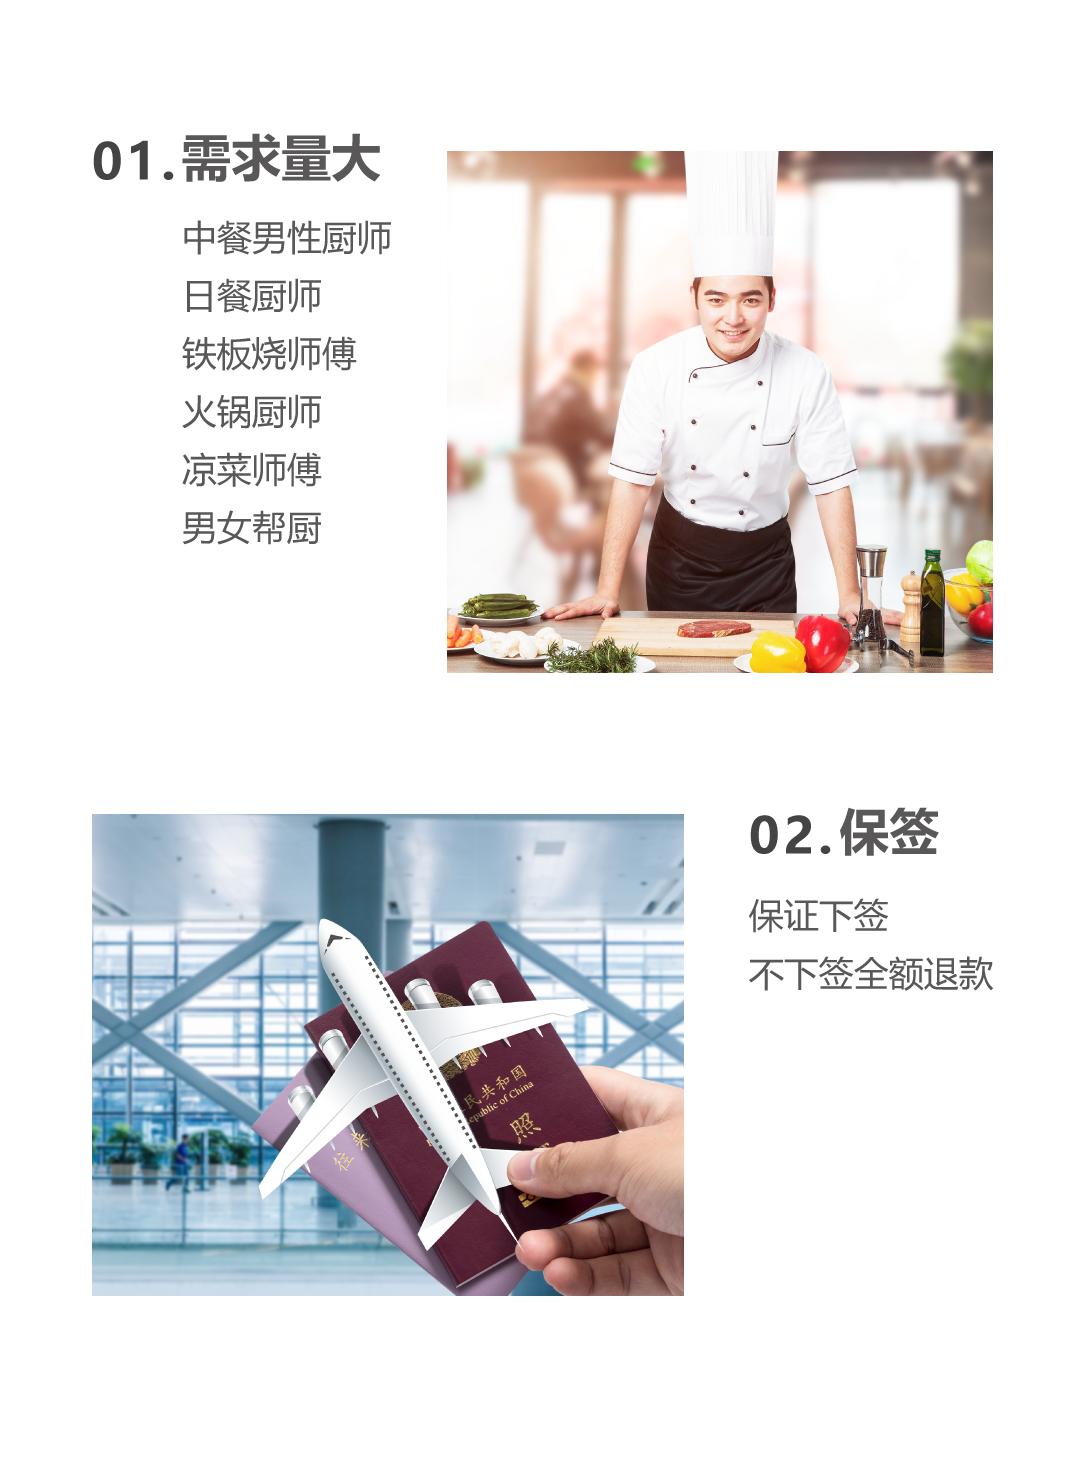 08-27-手机端网站-荷兰厨师详情页_03.png